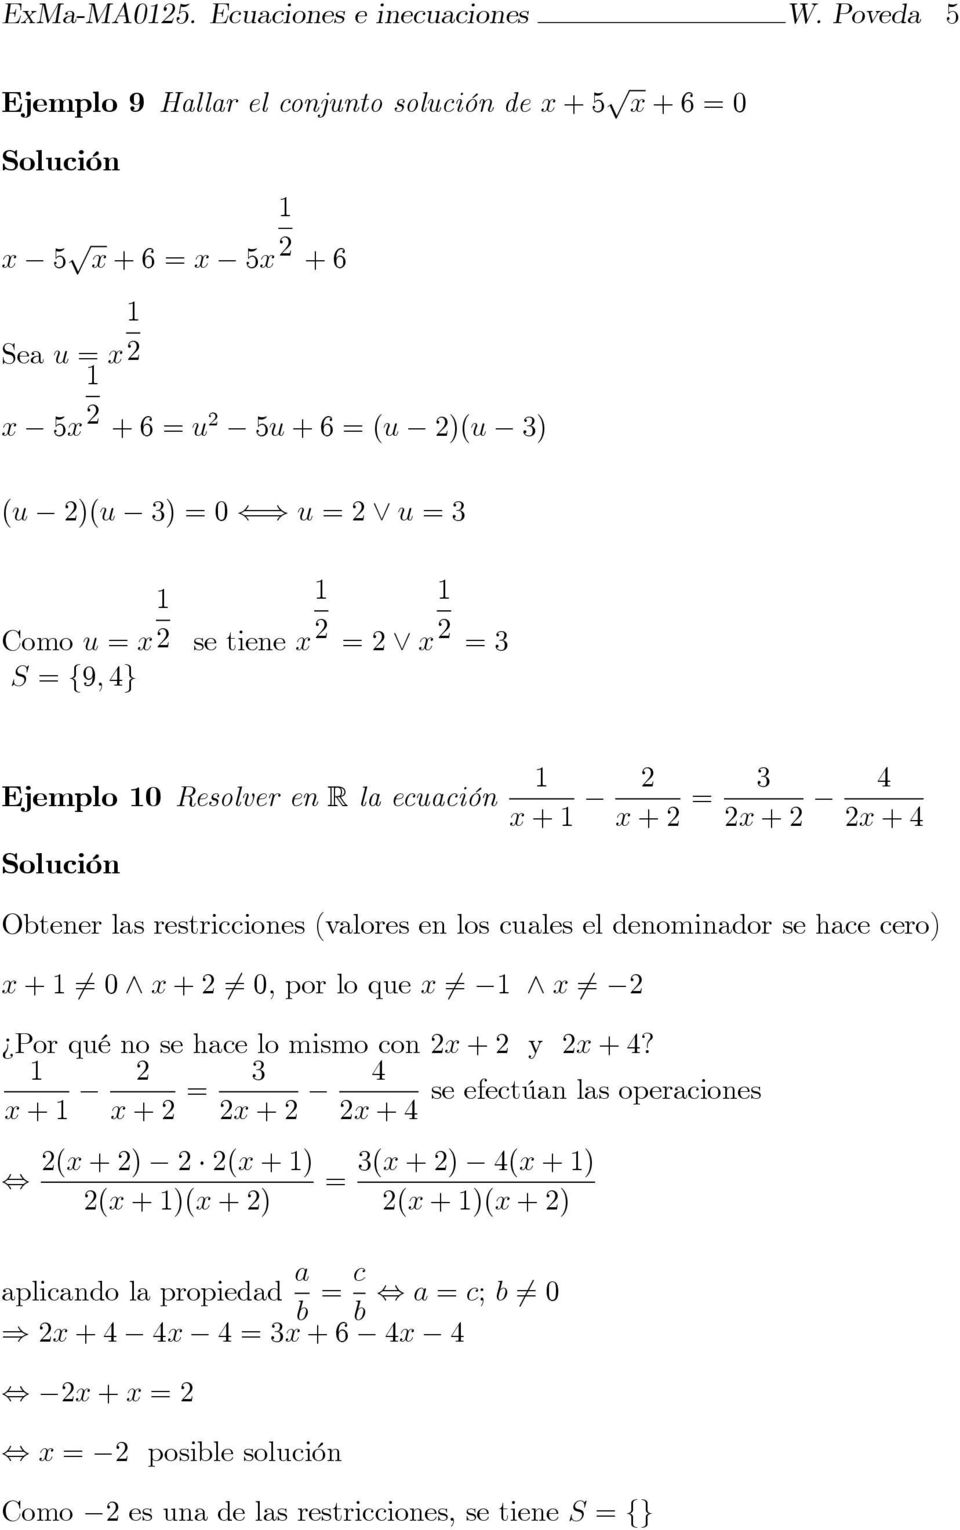 S = f9; 4g Ejemplo 0 Resolver en R la ecuación x + x + = x + 4 x + 4 Obtener las restricciones (valores en los cuales el denominador se hace cero) x + 6= 0 ^ x + 6= 0; por lo que